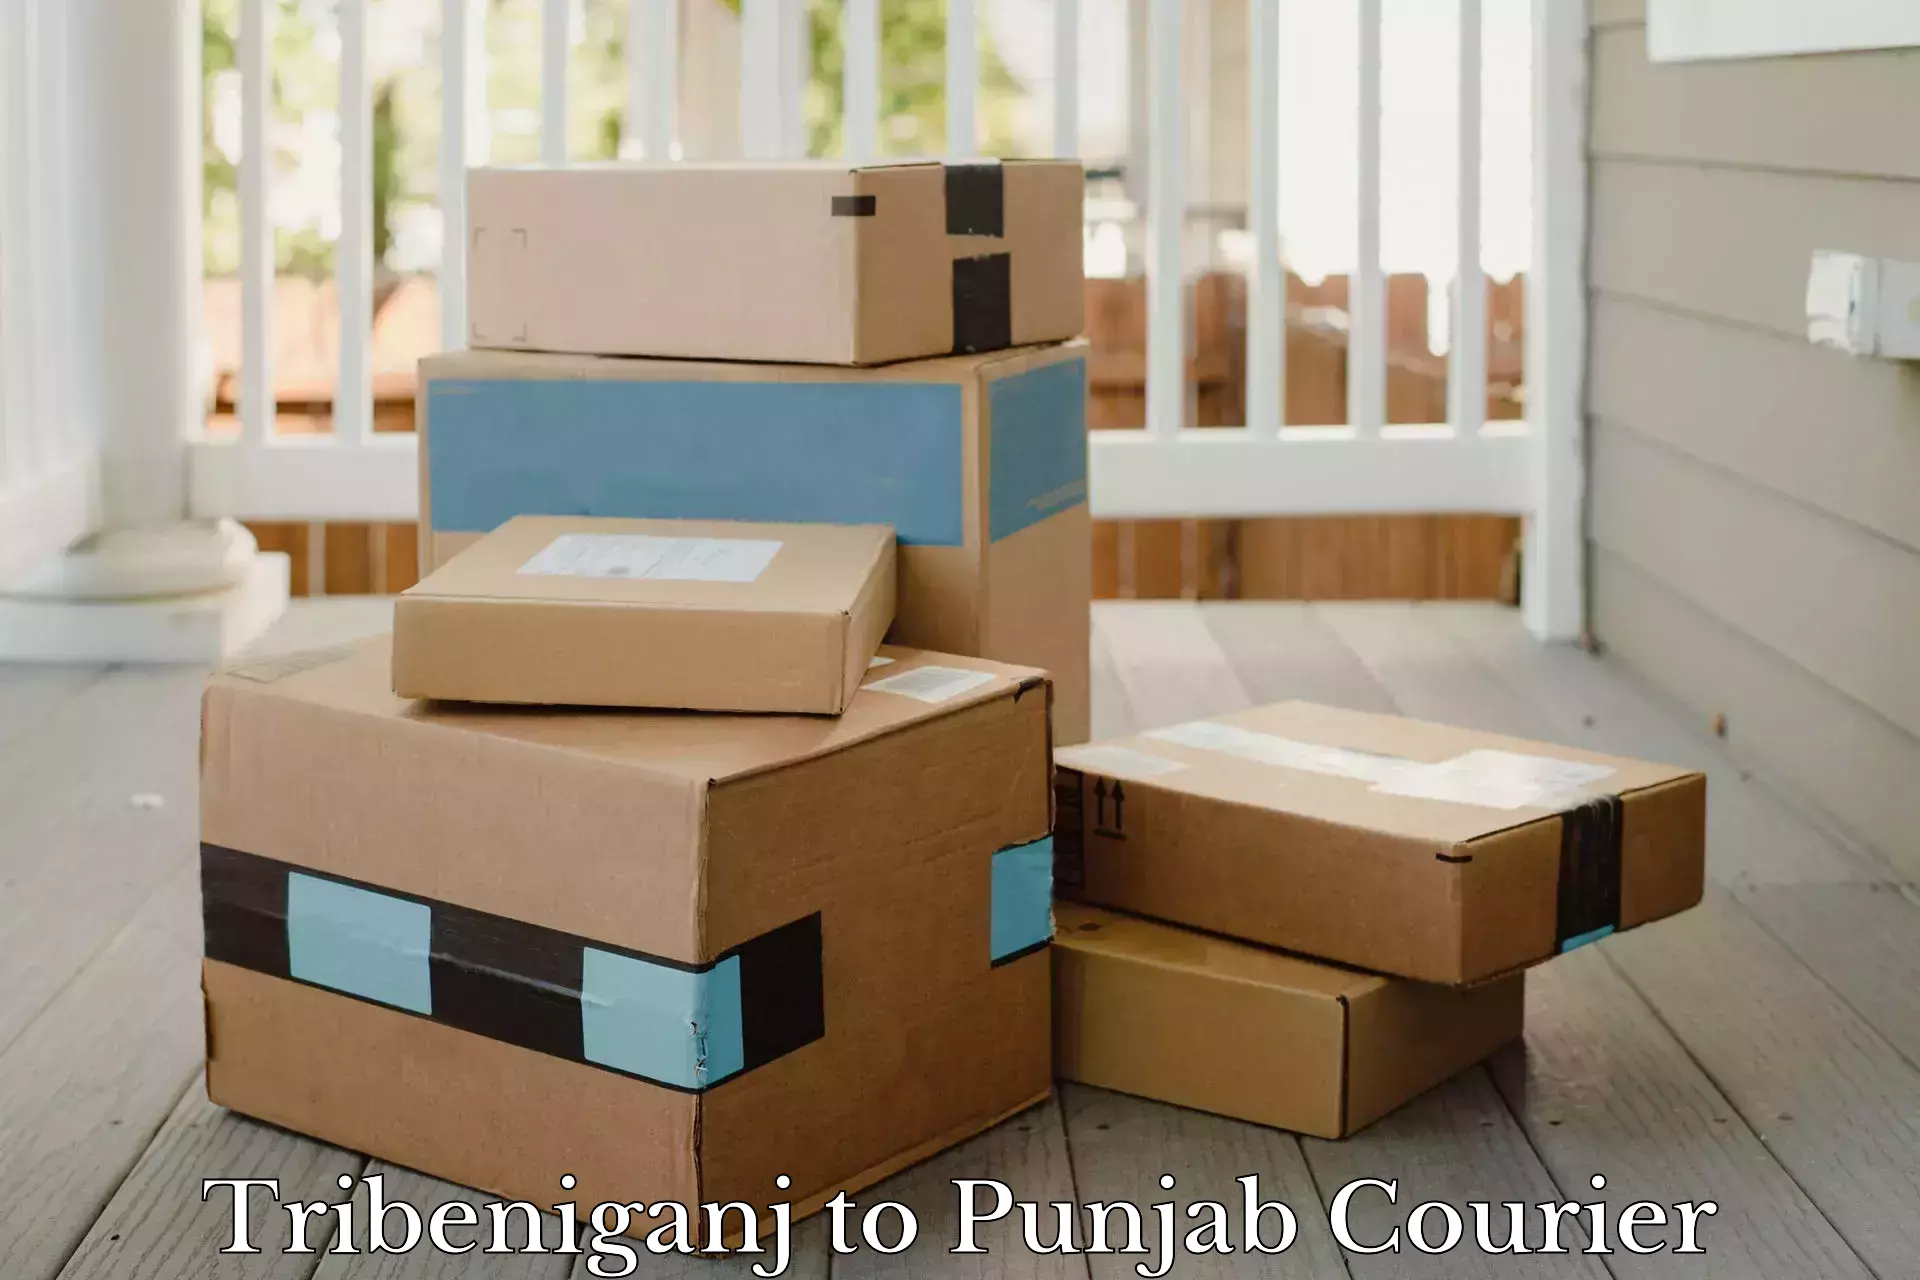 Premium courier solutions Tribeniganj to Punjab